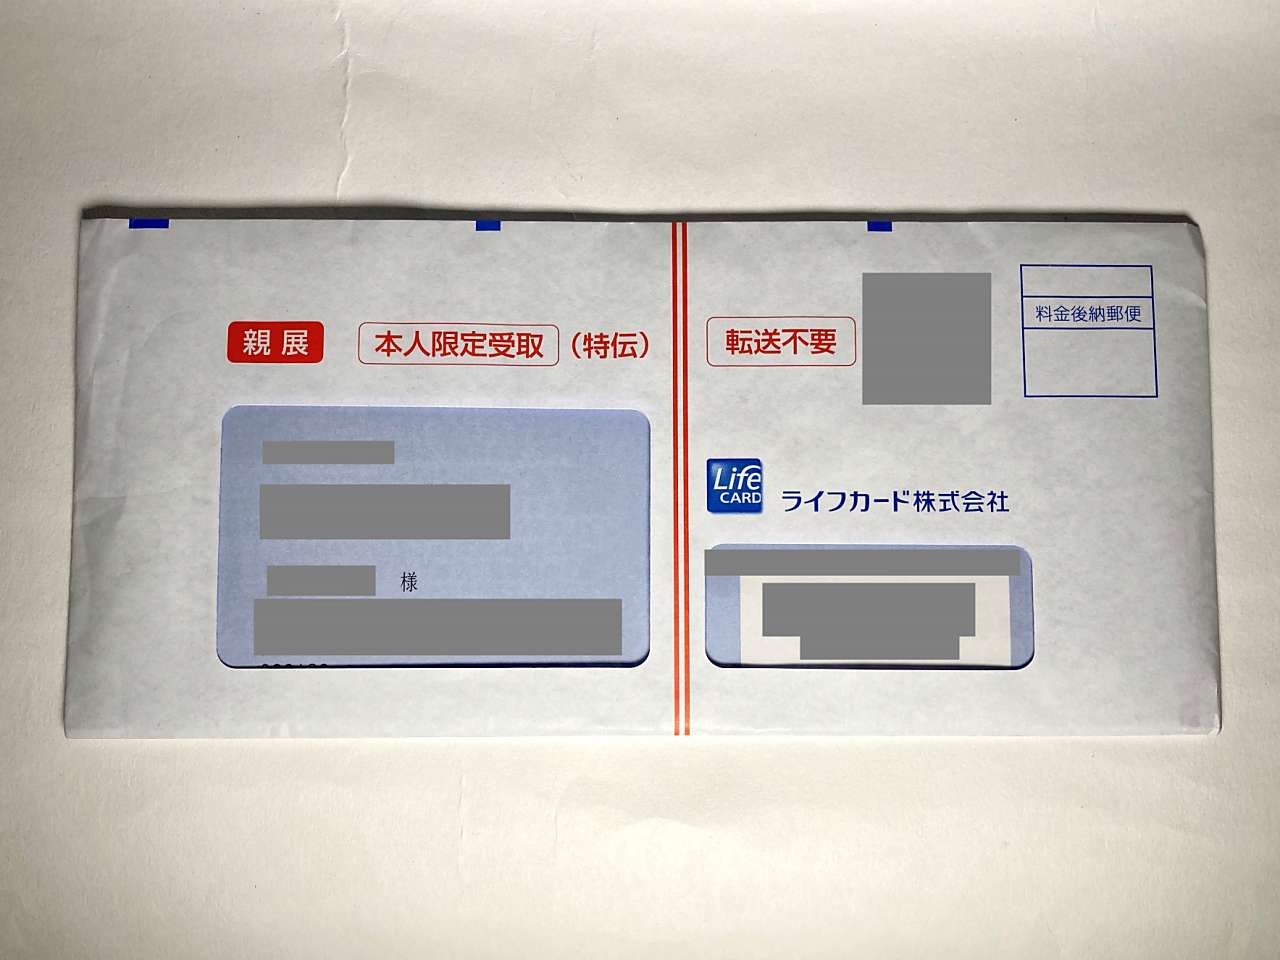 210905-法人向けクレジットカード-ミライノ カード Business ライト申込-3